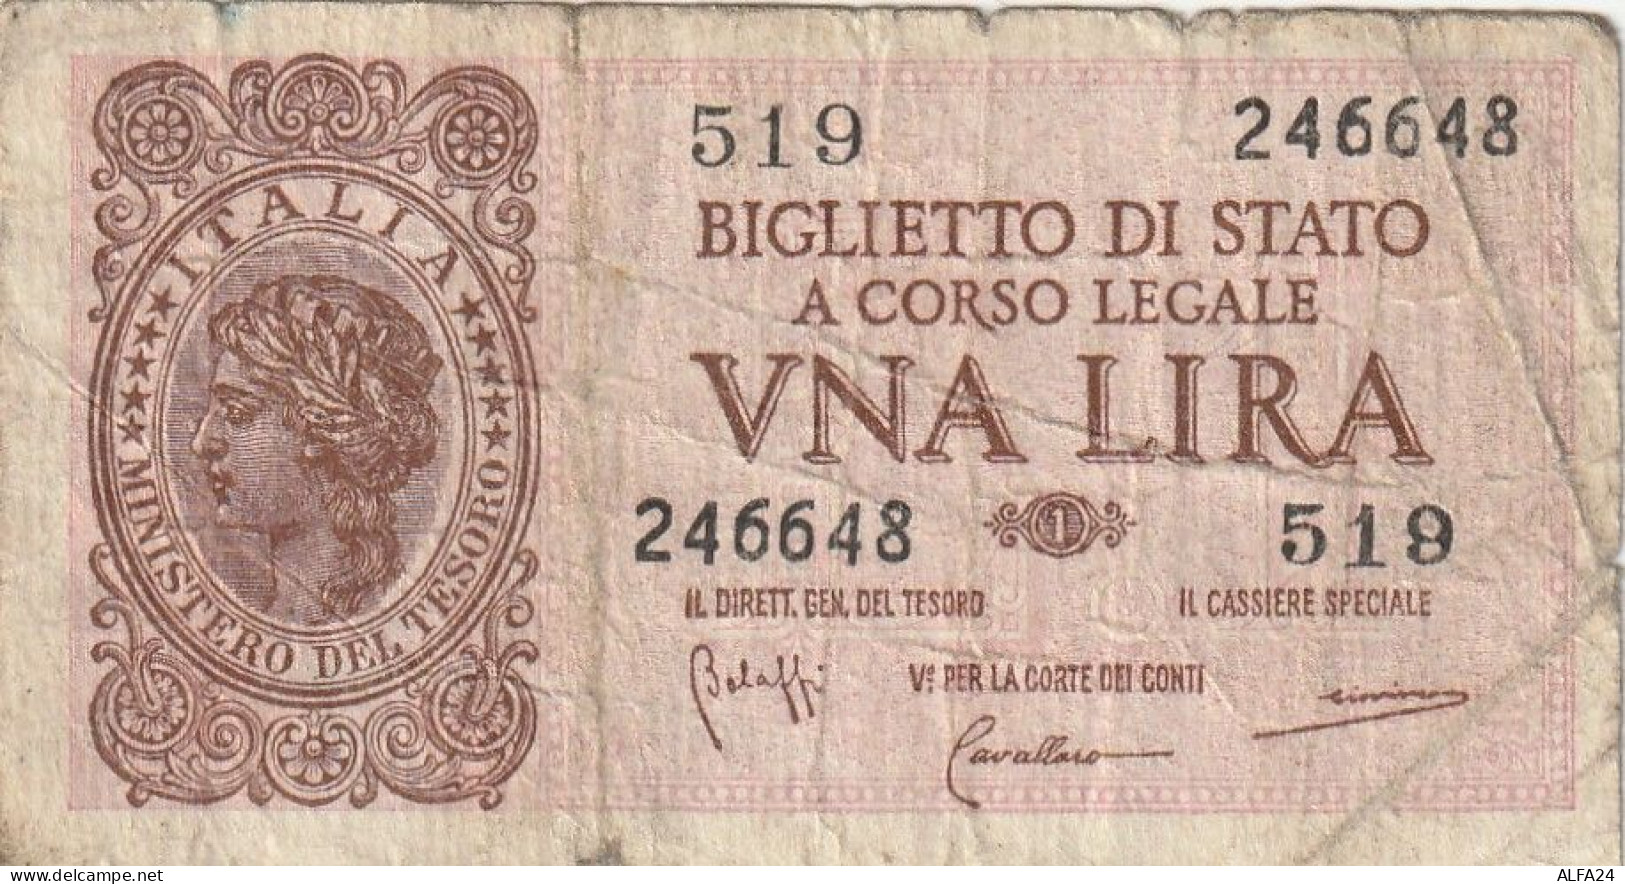 BANCONOTA BIGLIETTO DI STATO ITALIA 1 LIRA F (RY7343 - Italië – 1 Lira